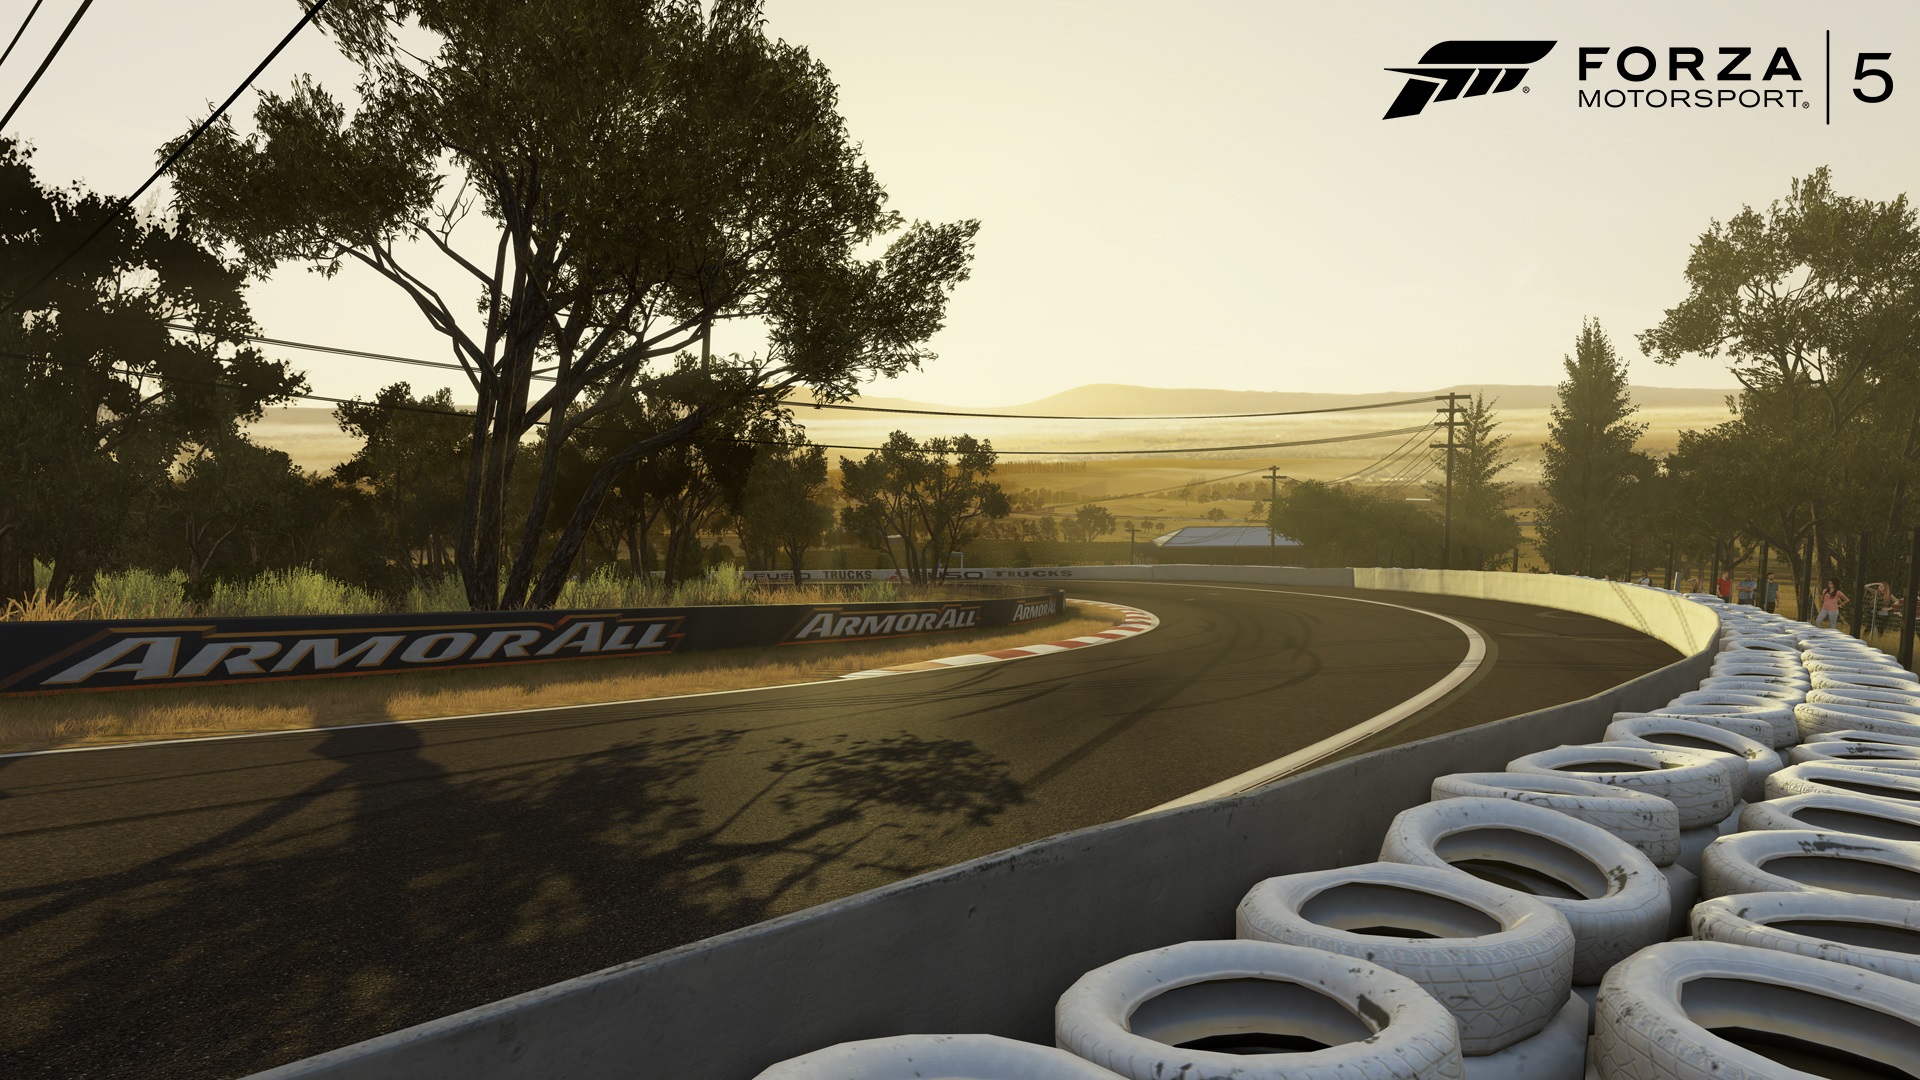 Forza Motorsport 5 Jazd sa vdy za idelnych podmienok, za svetla. Non jazdy v hre nenjdete.